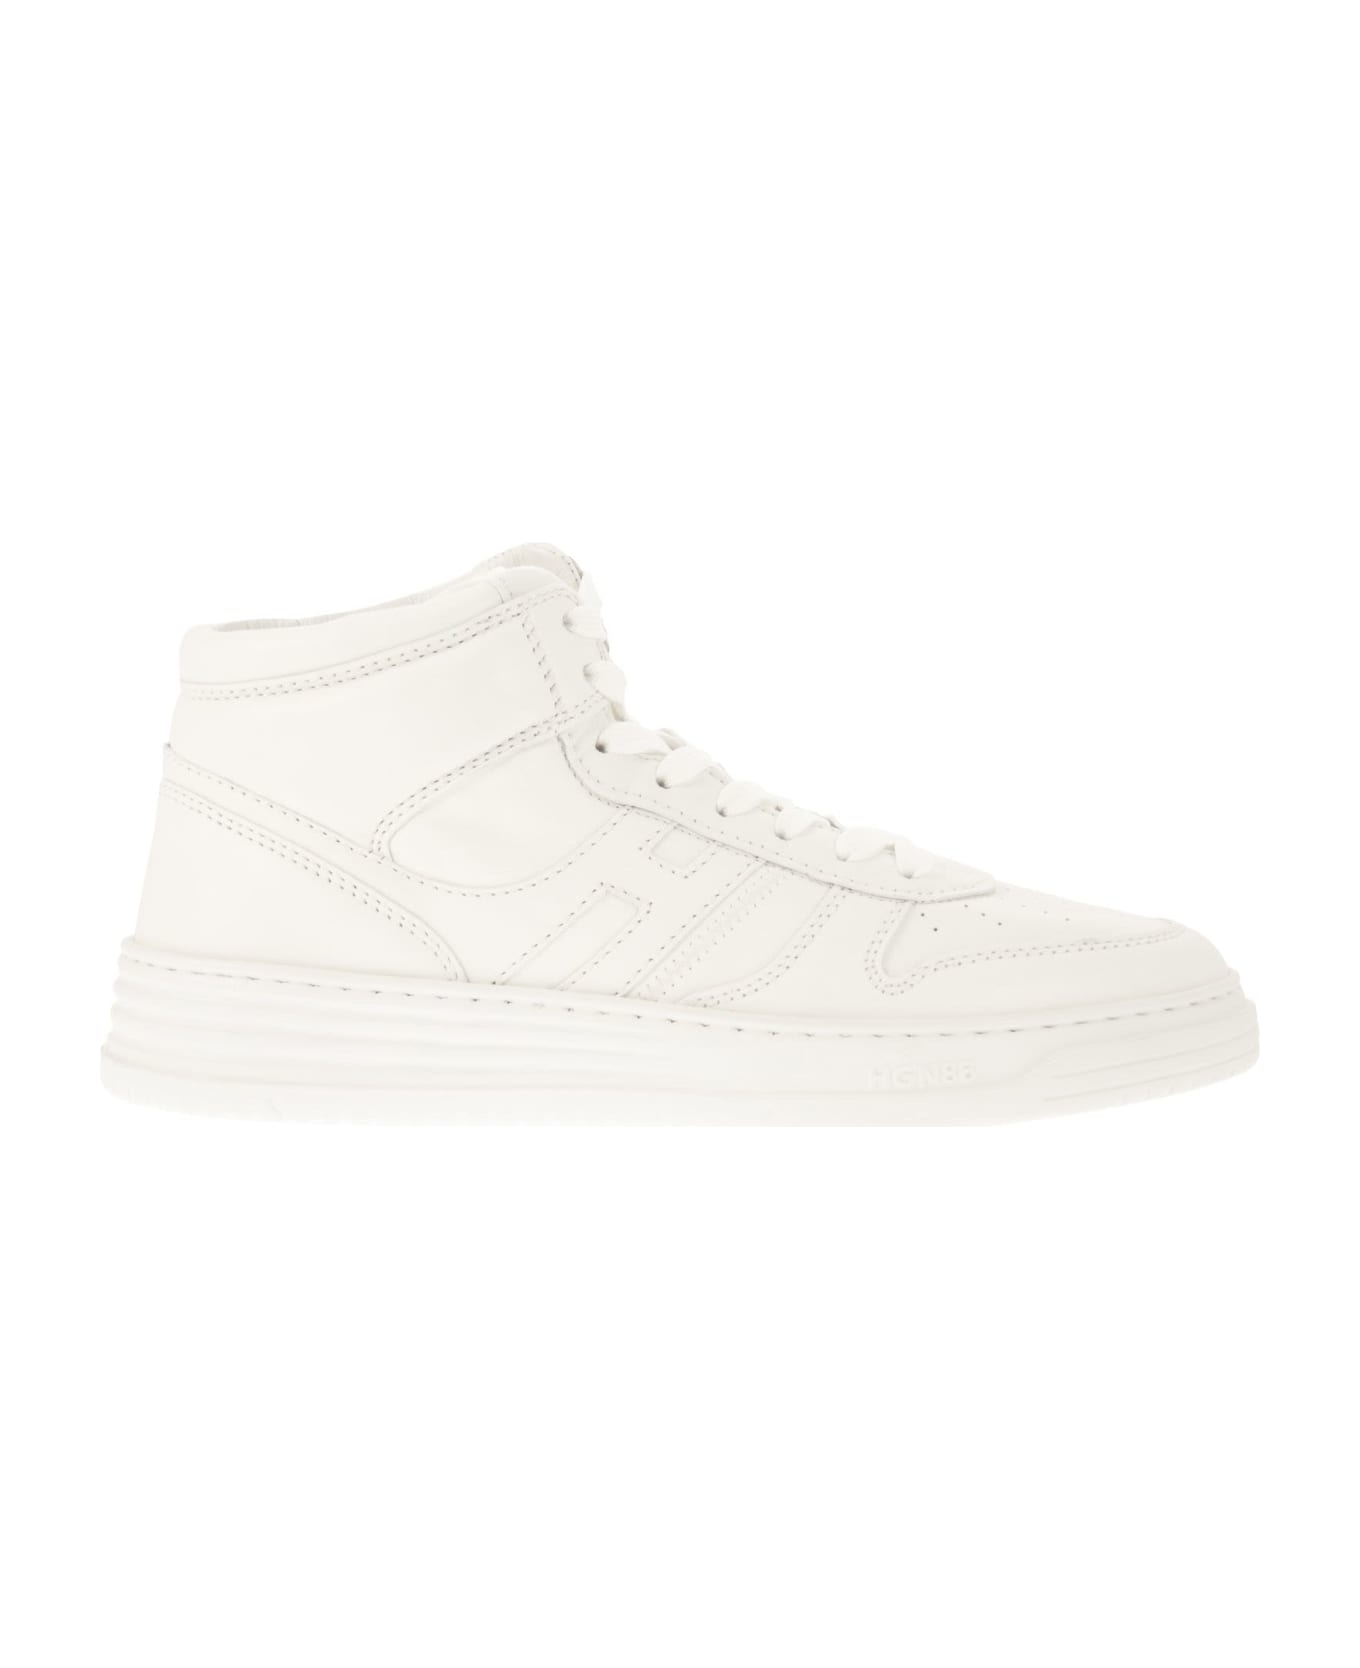 Hogan White Leather Sneakers - White